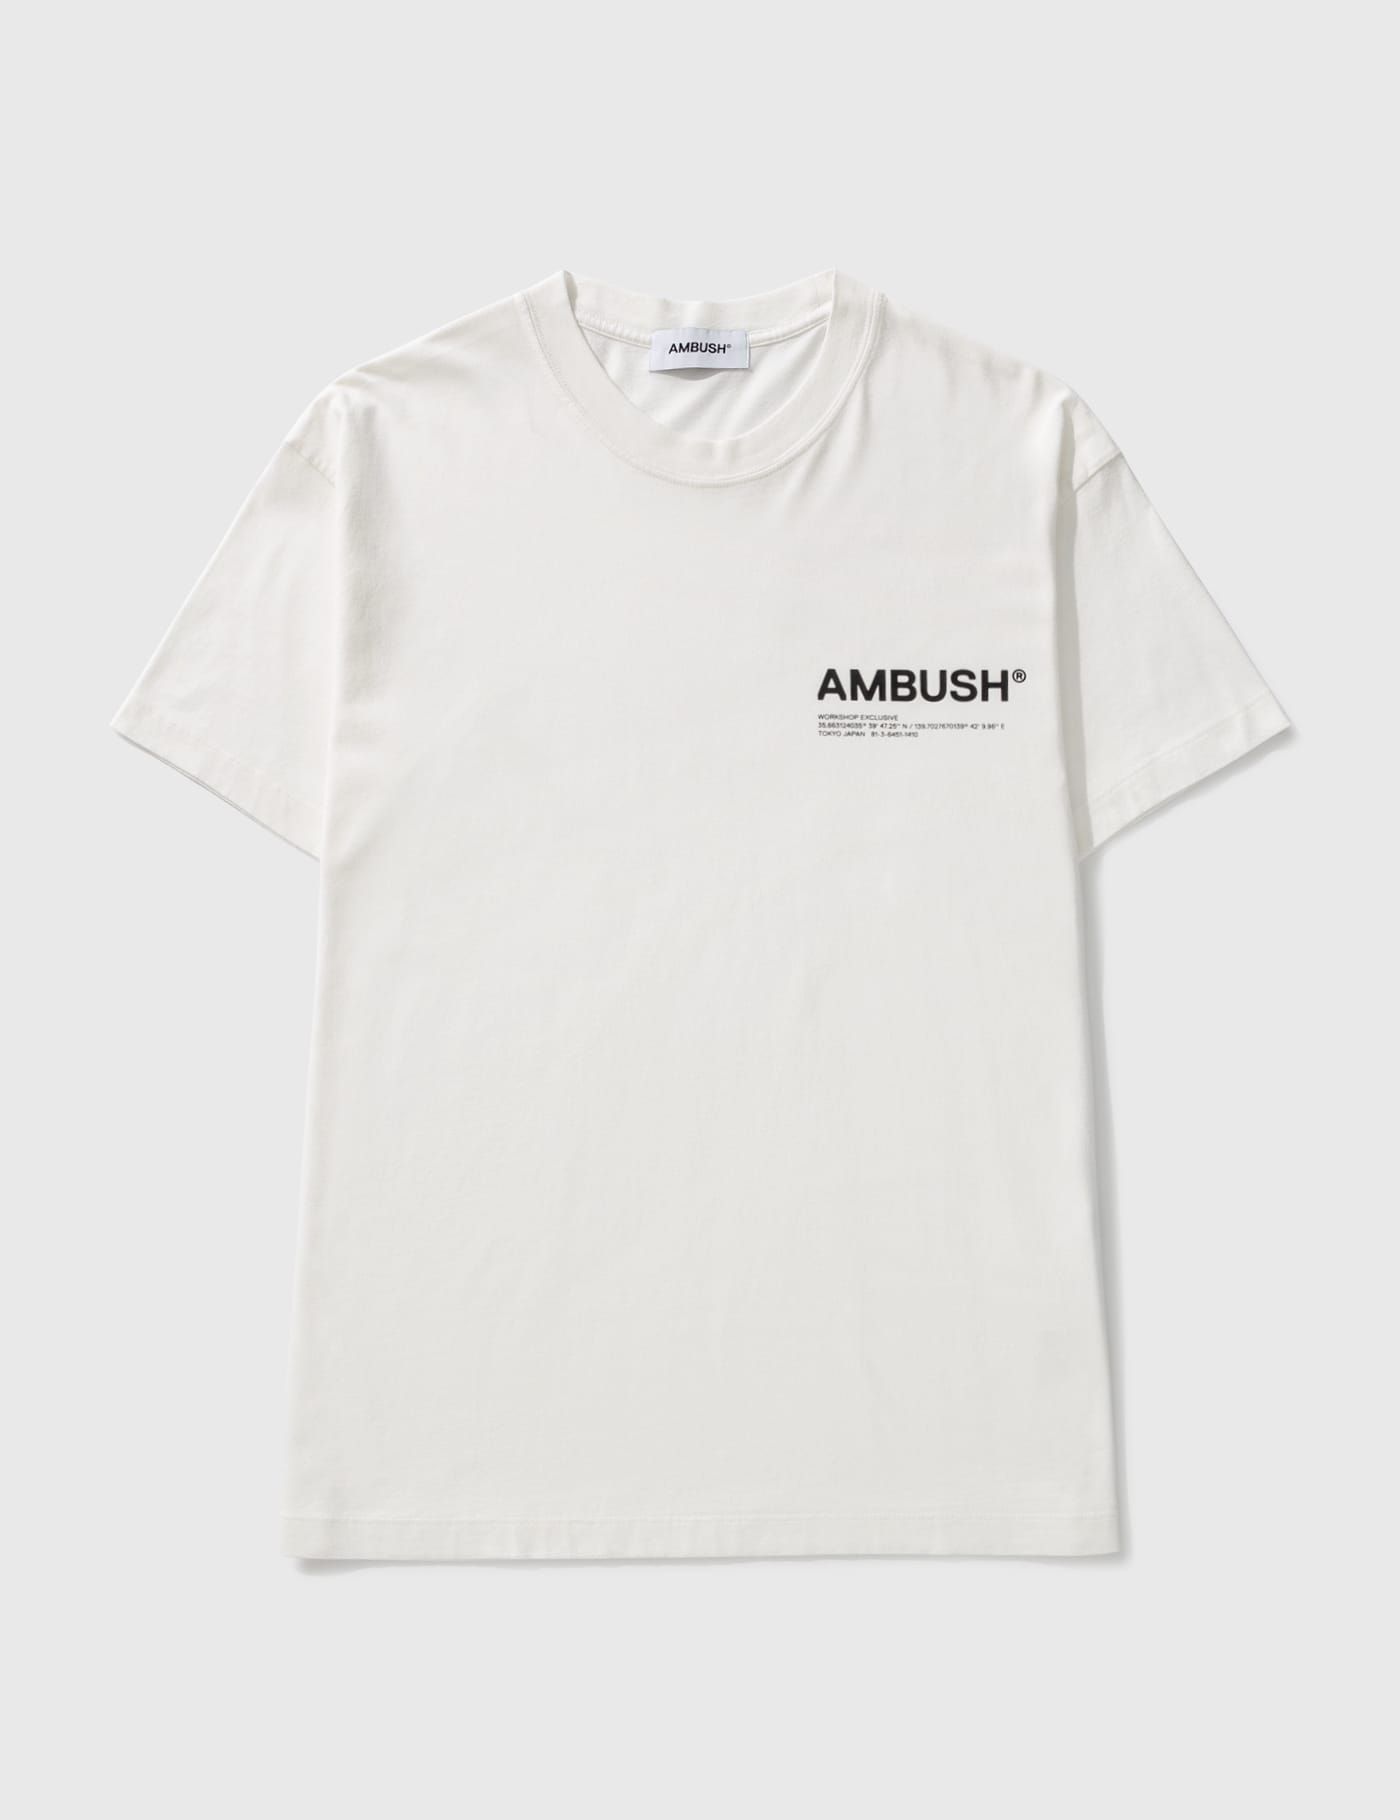 Ambush Logo short sleeve shirt black